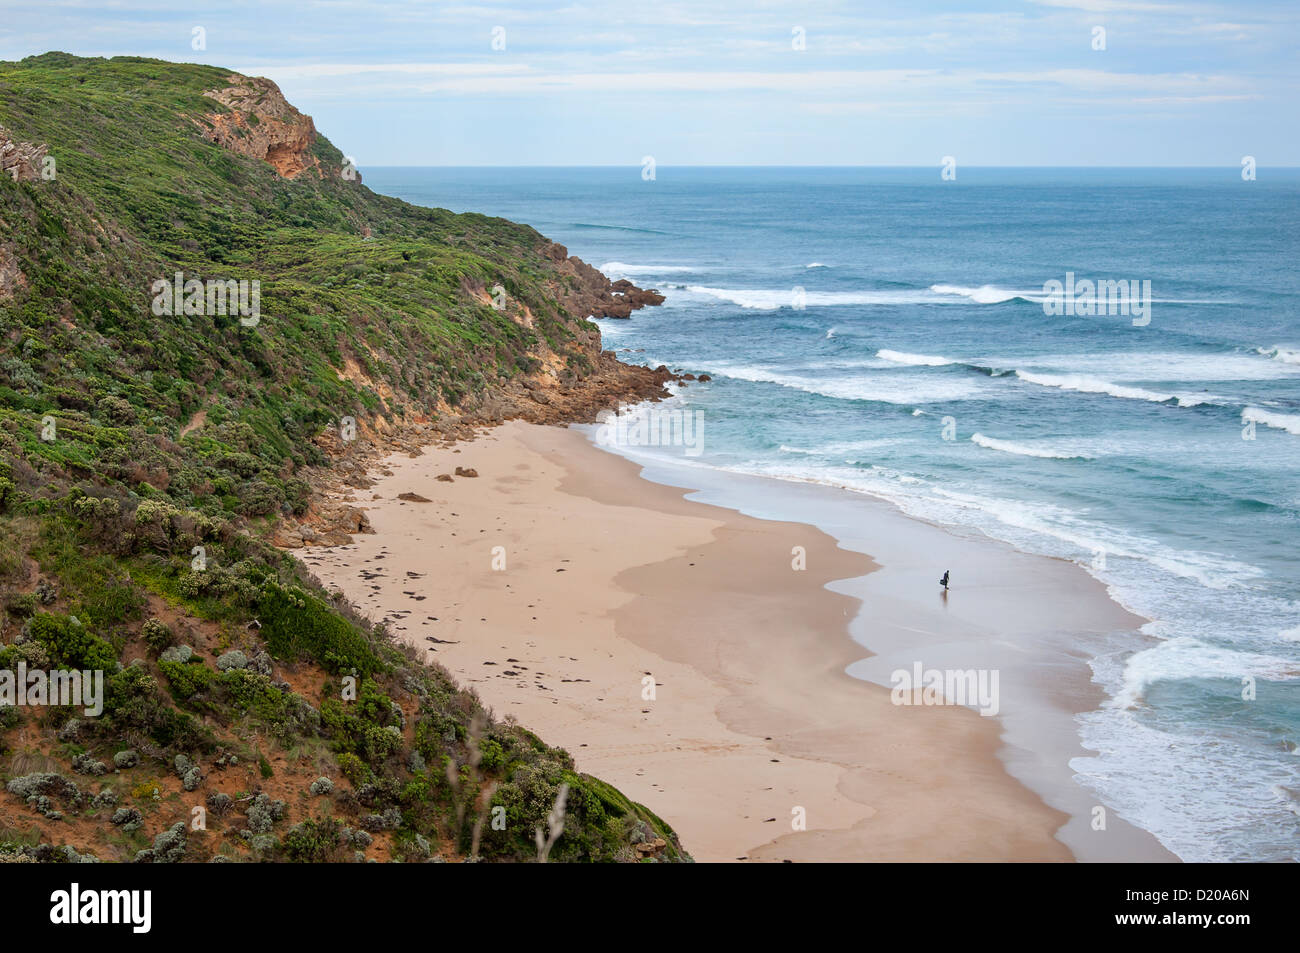 A Lone Surfer at Glenaire, Victoria, Australia Stock Photo